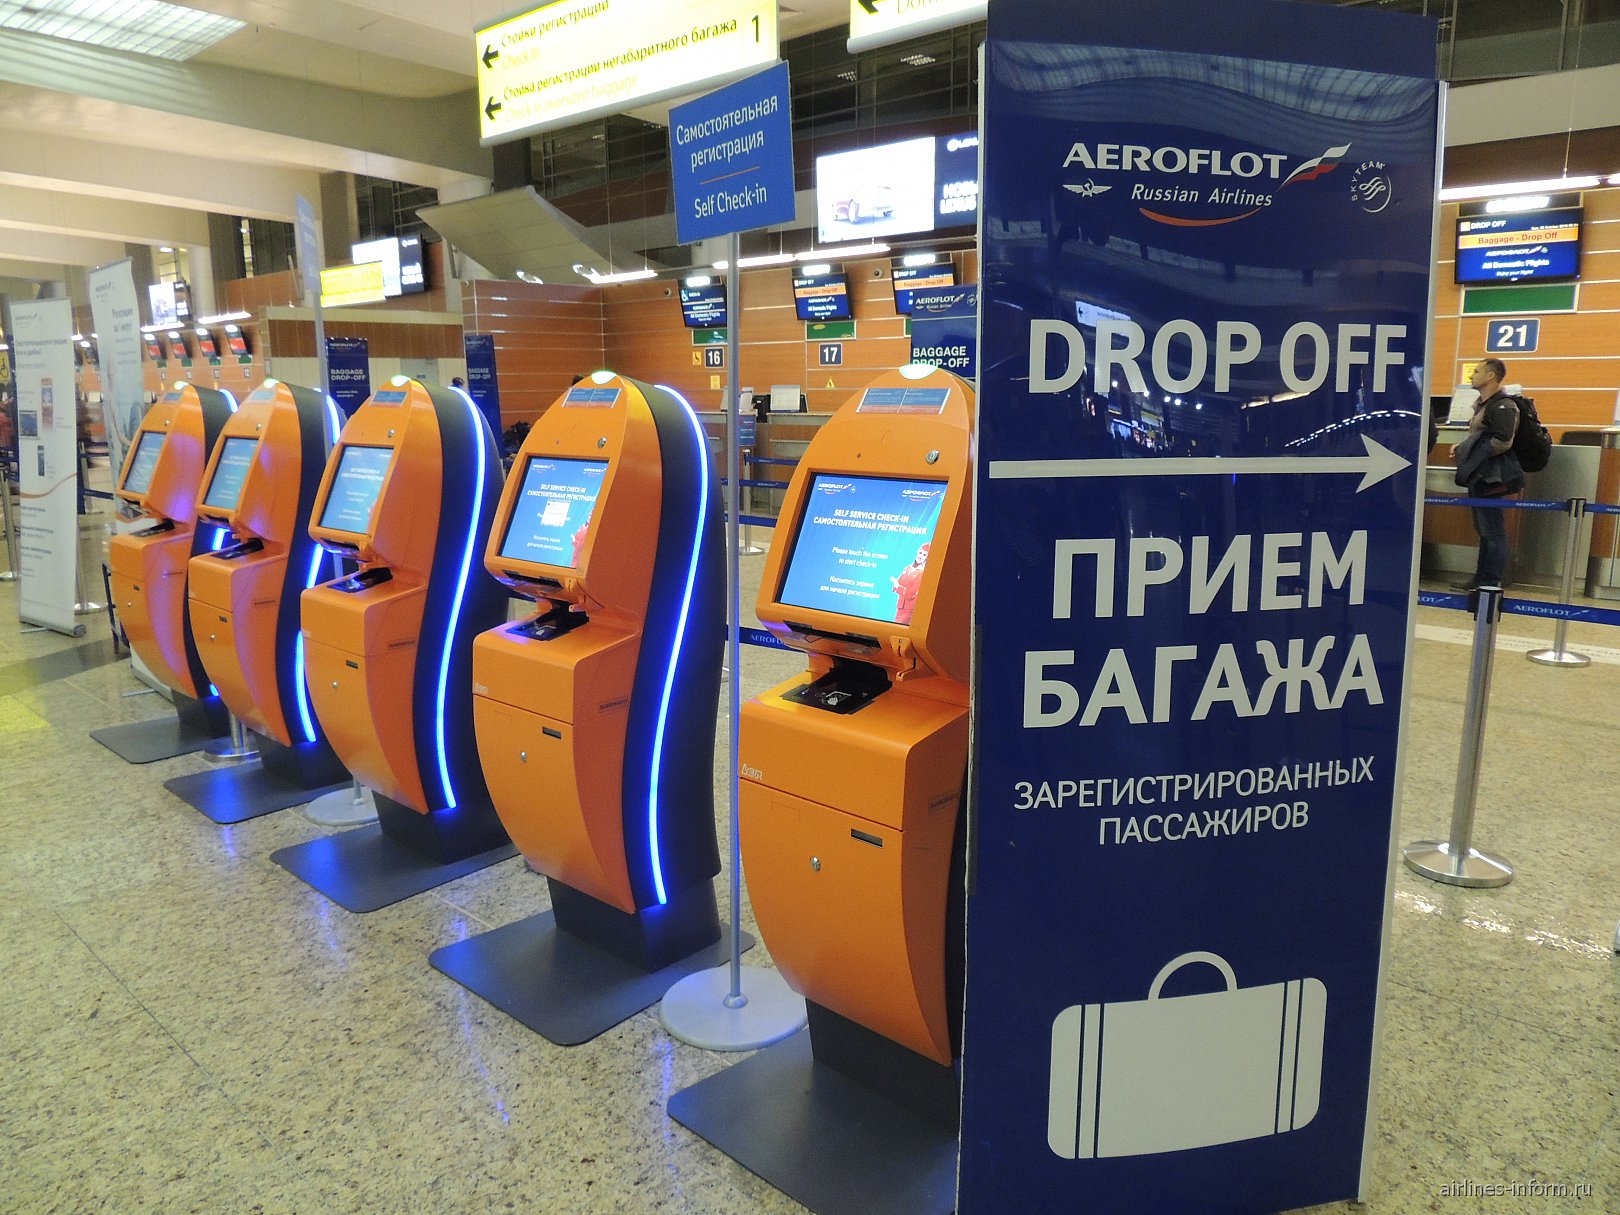 Стойка саморегистрации в аэропорту Шереметьево